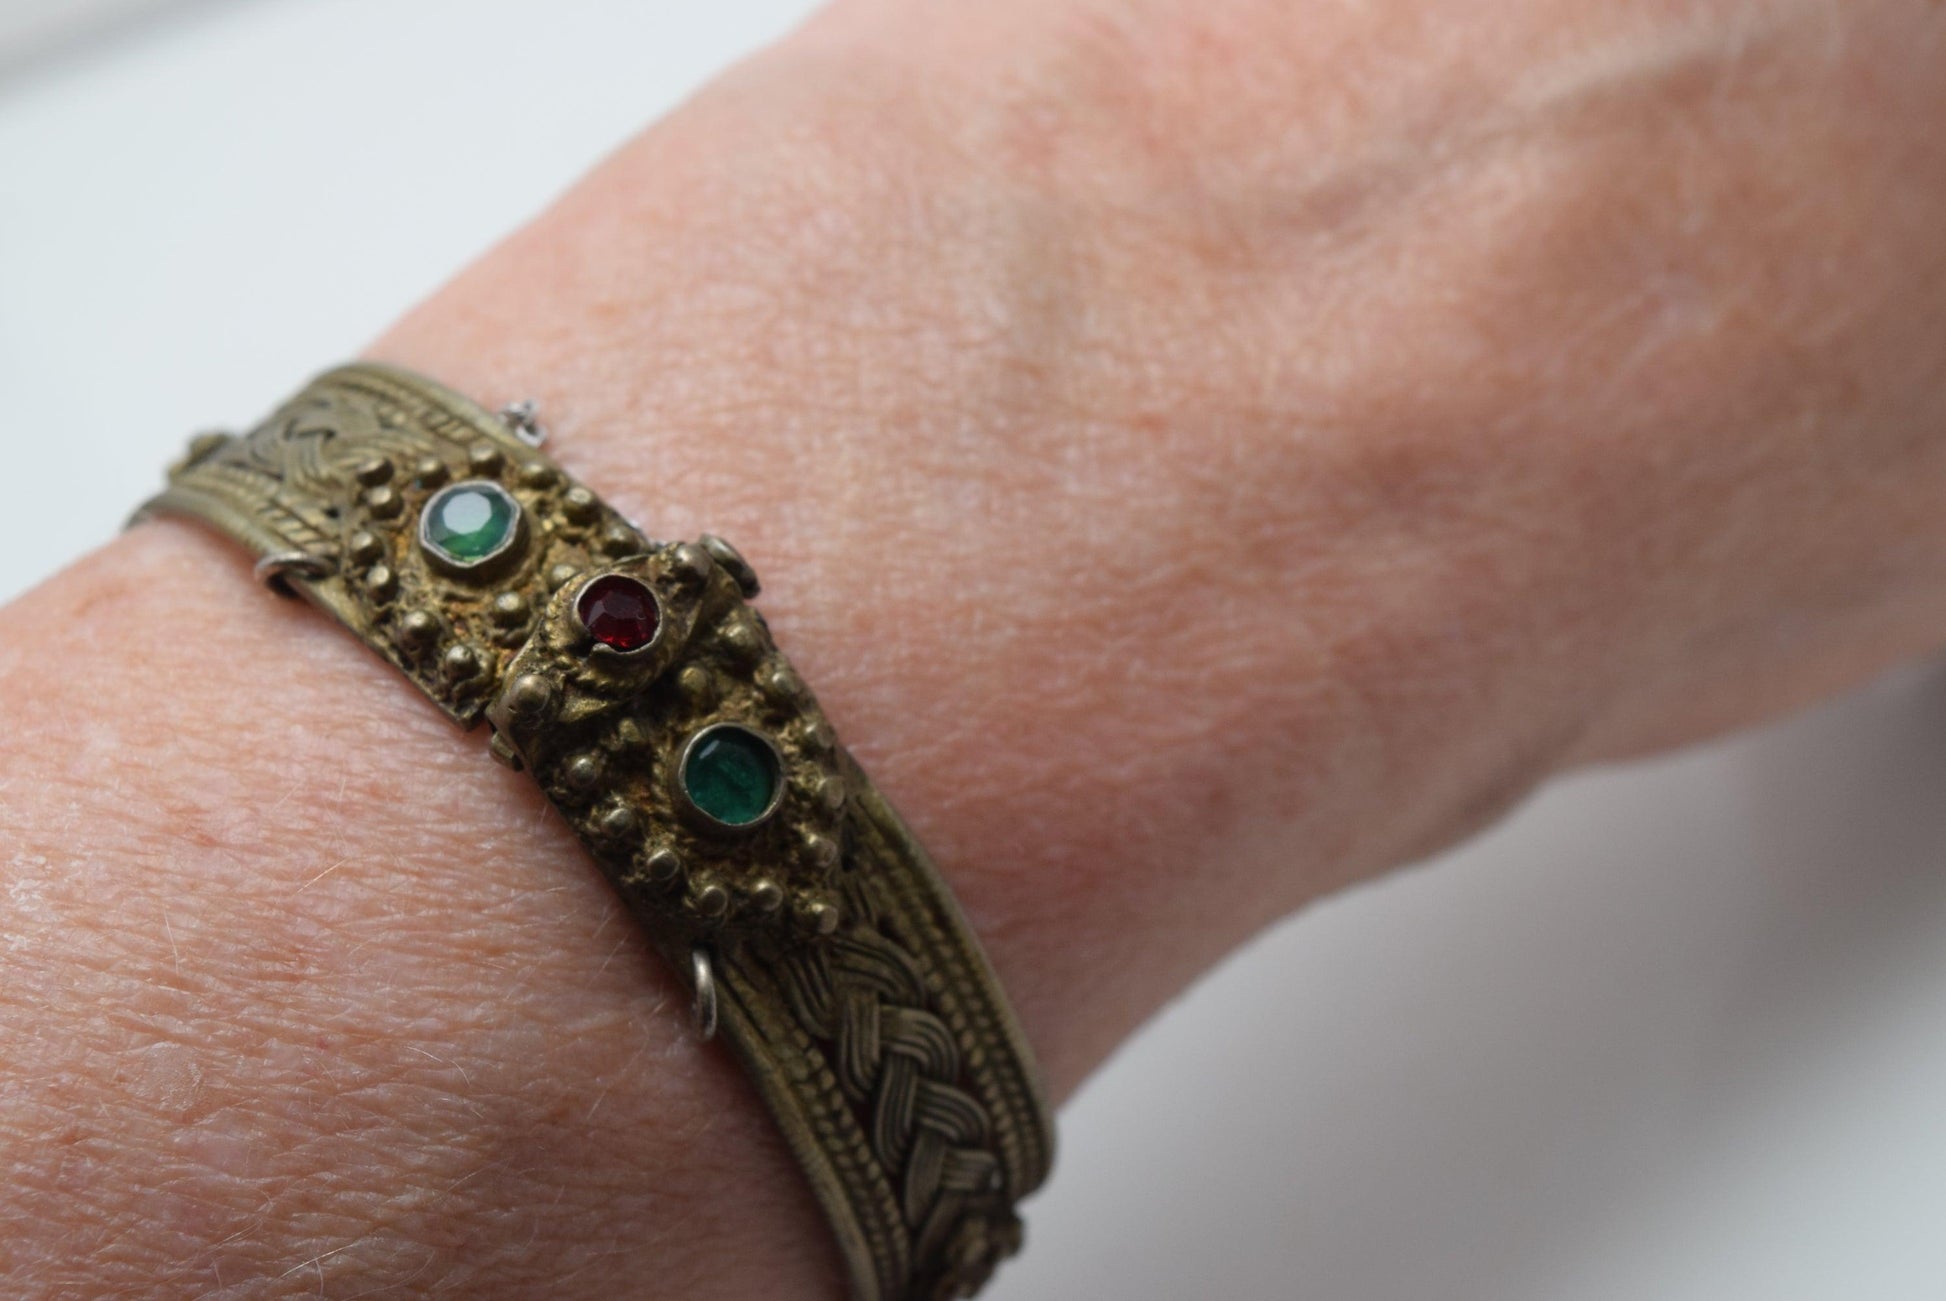 Antique Greek bracelet